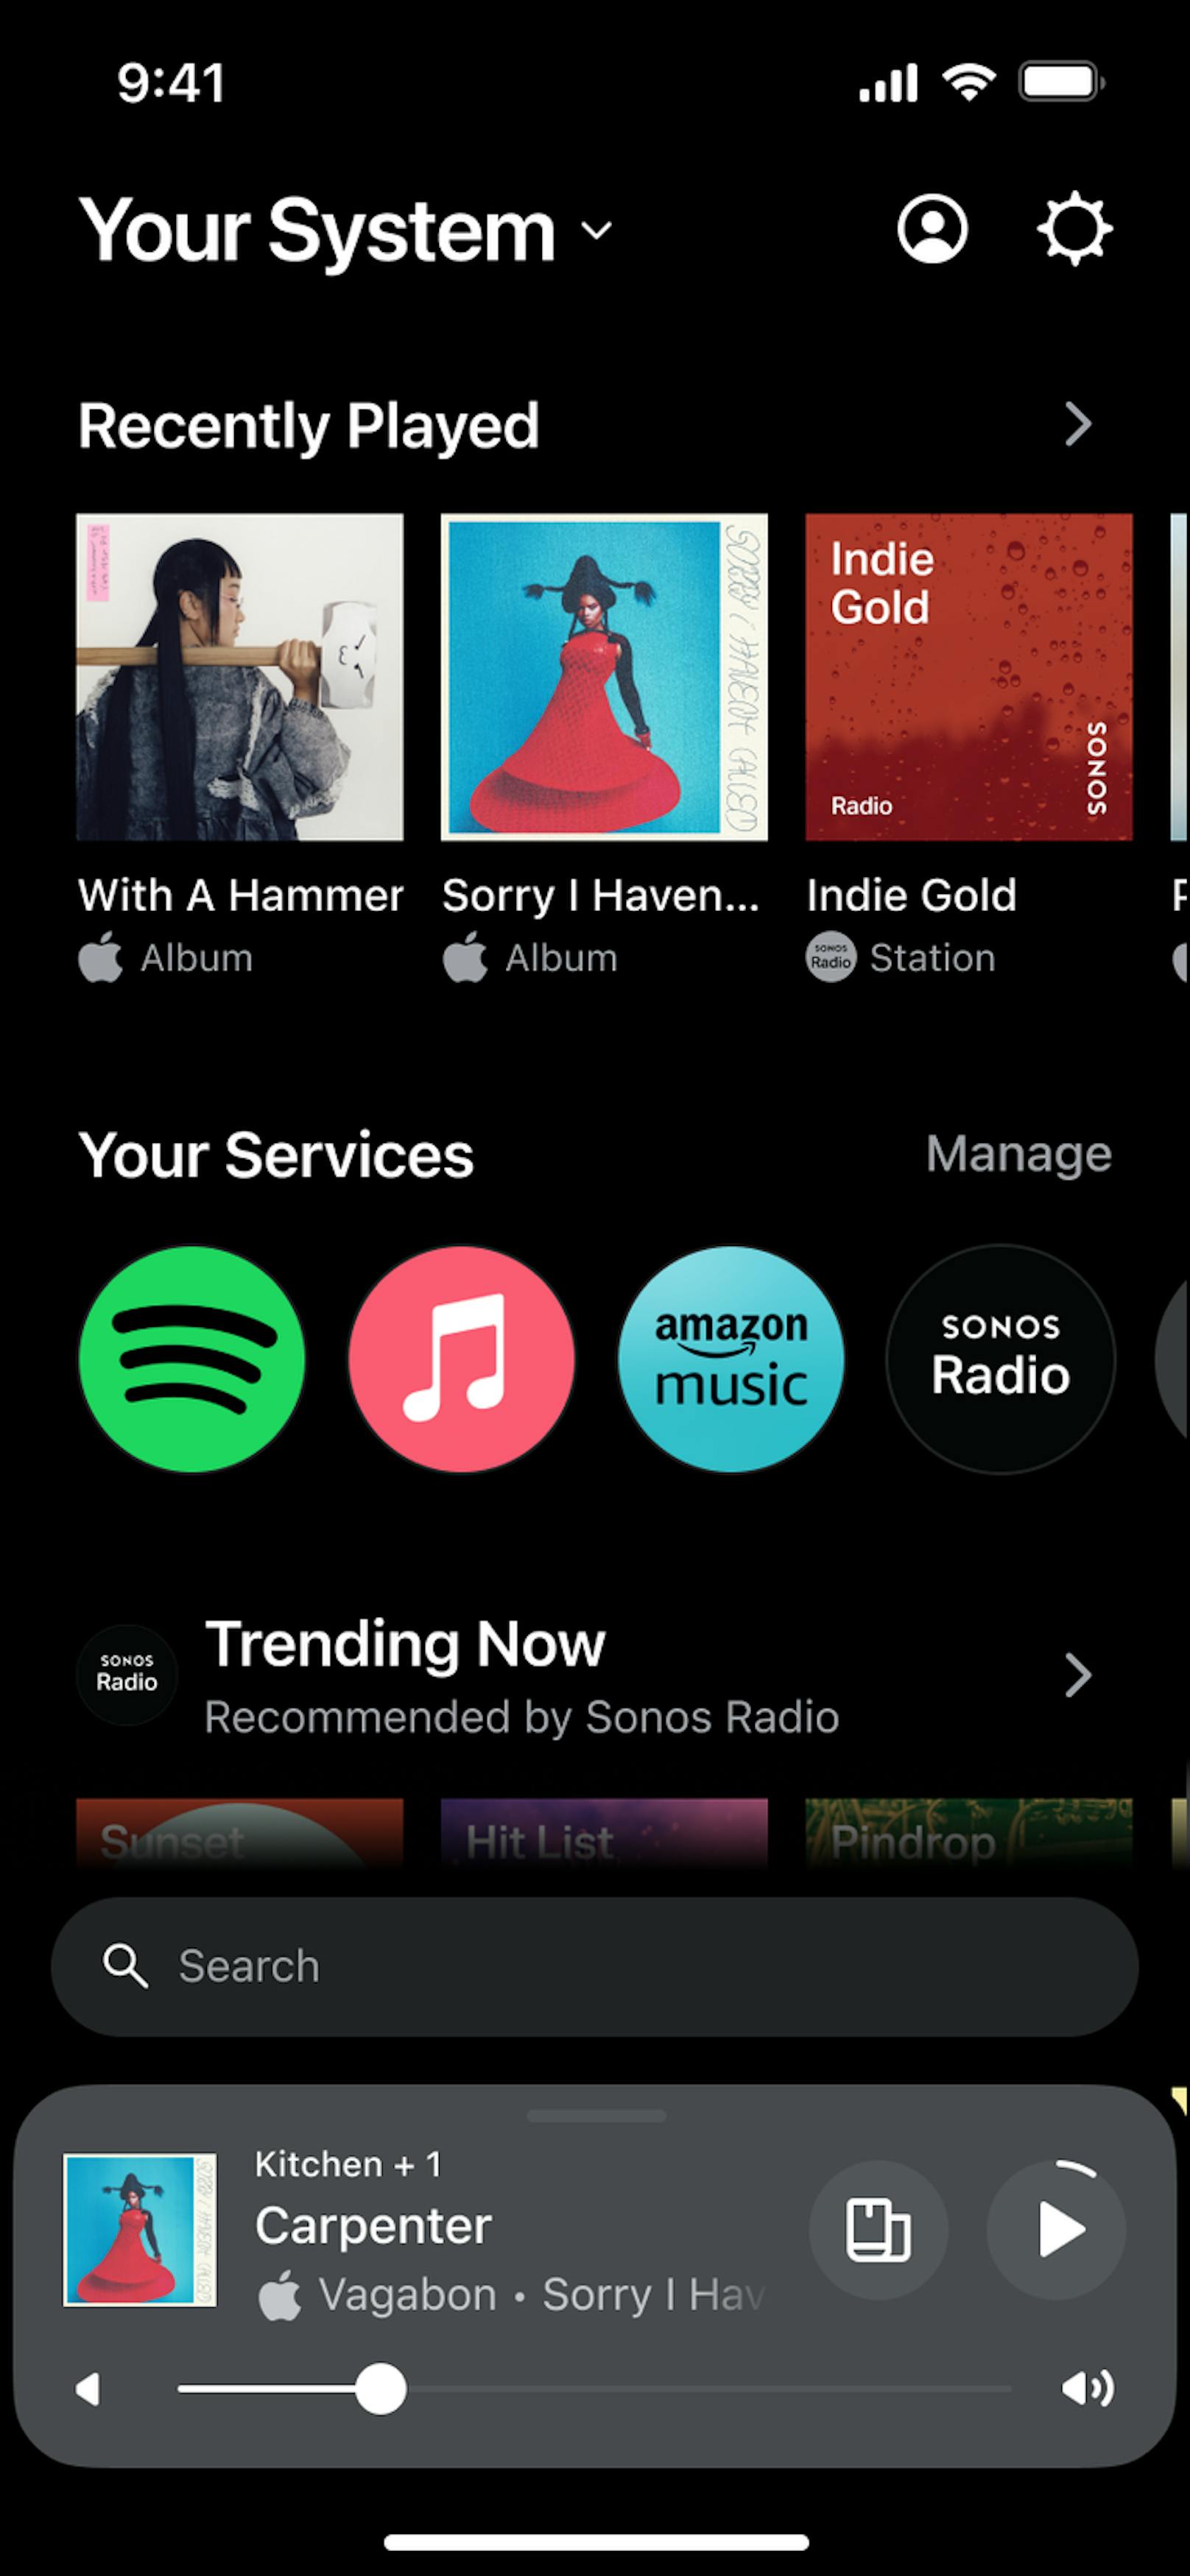 Sonos kündigt das bisher größte Update für seine Sound-App an – am 7. Mai wird die Anwendung bei allen Nutzern im komplett neuen Design erscheinen.